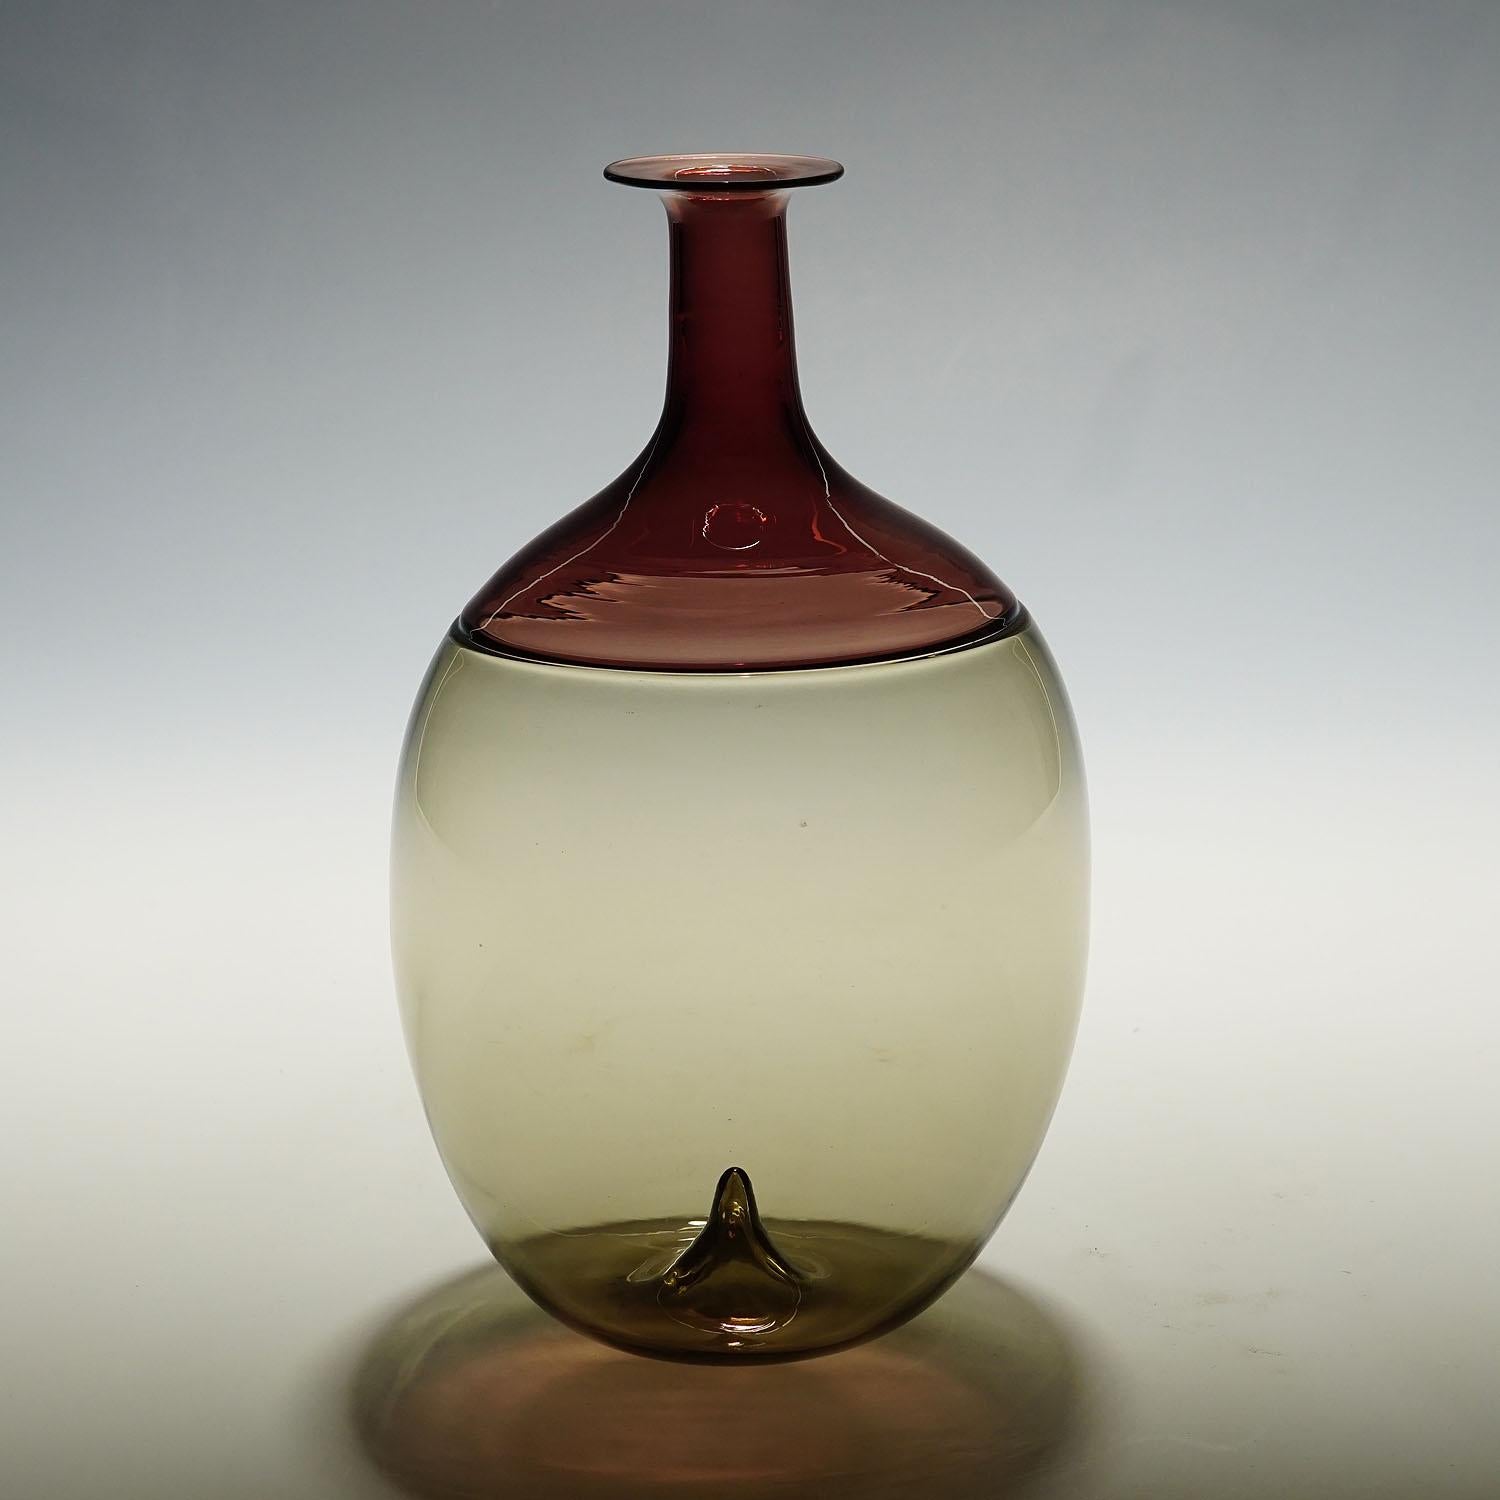 Venini Vase aus Kunstglas 'Bolle' von Tapio Wirkkala für Venini, Murano

Vintage-Vase aus Kunstglas aus der Serie 